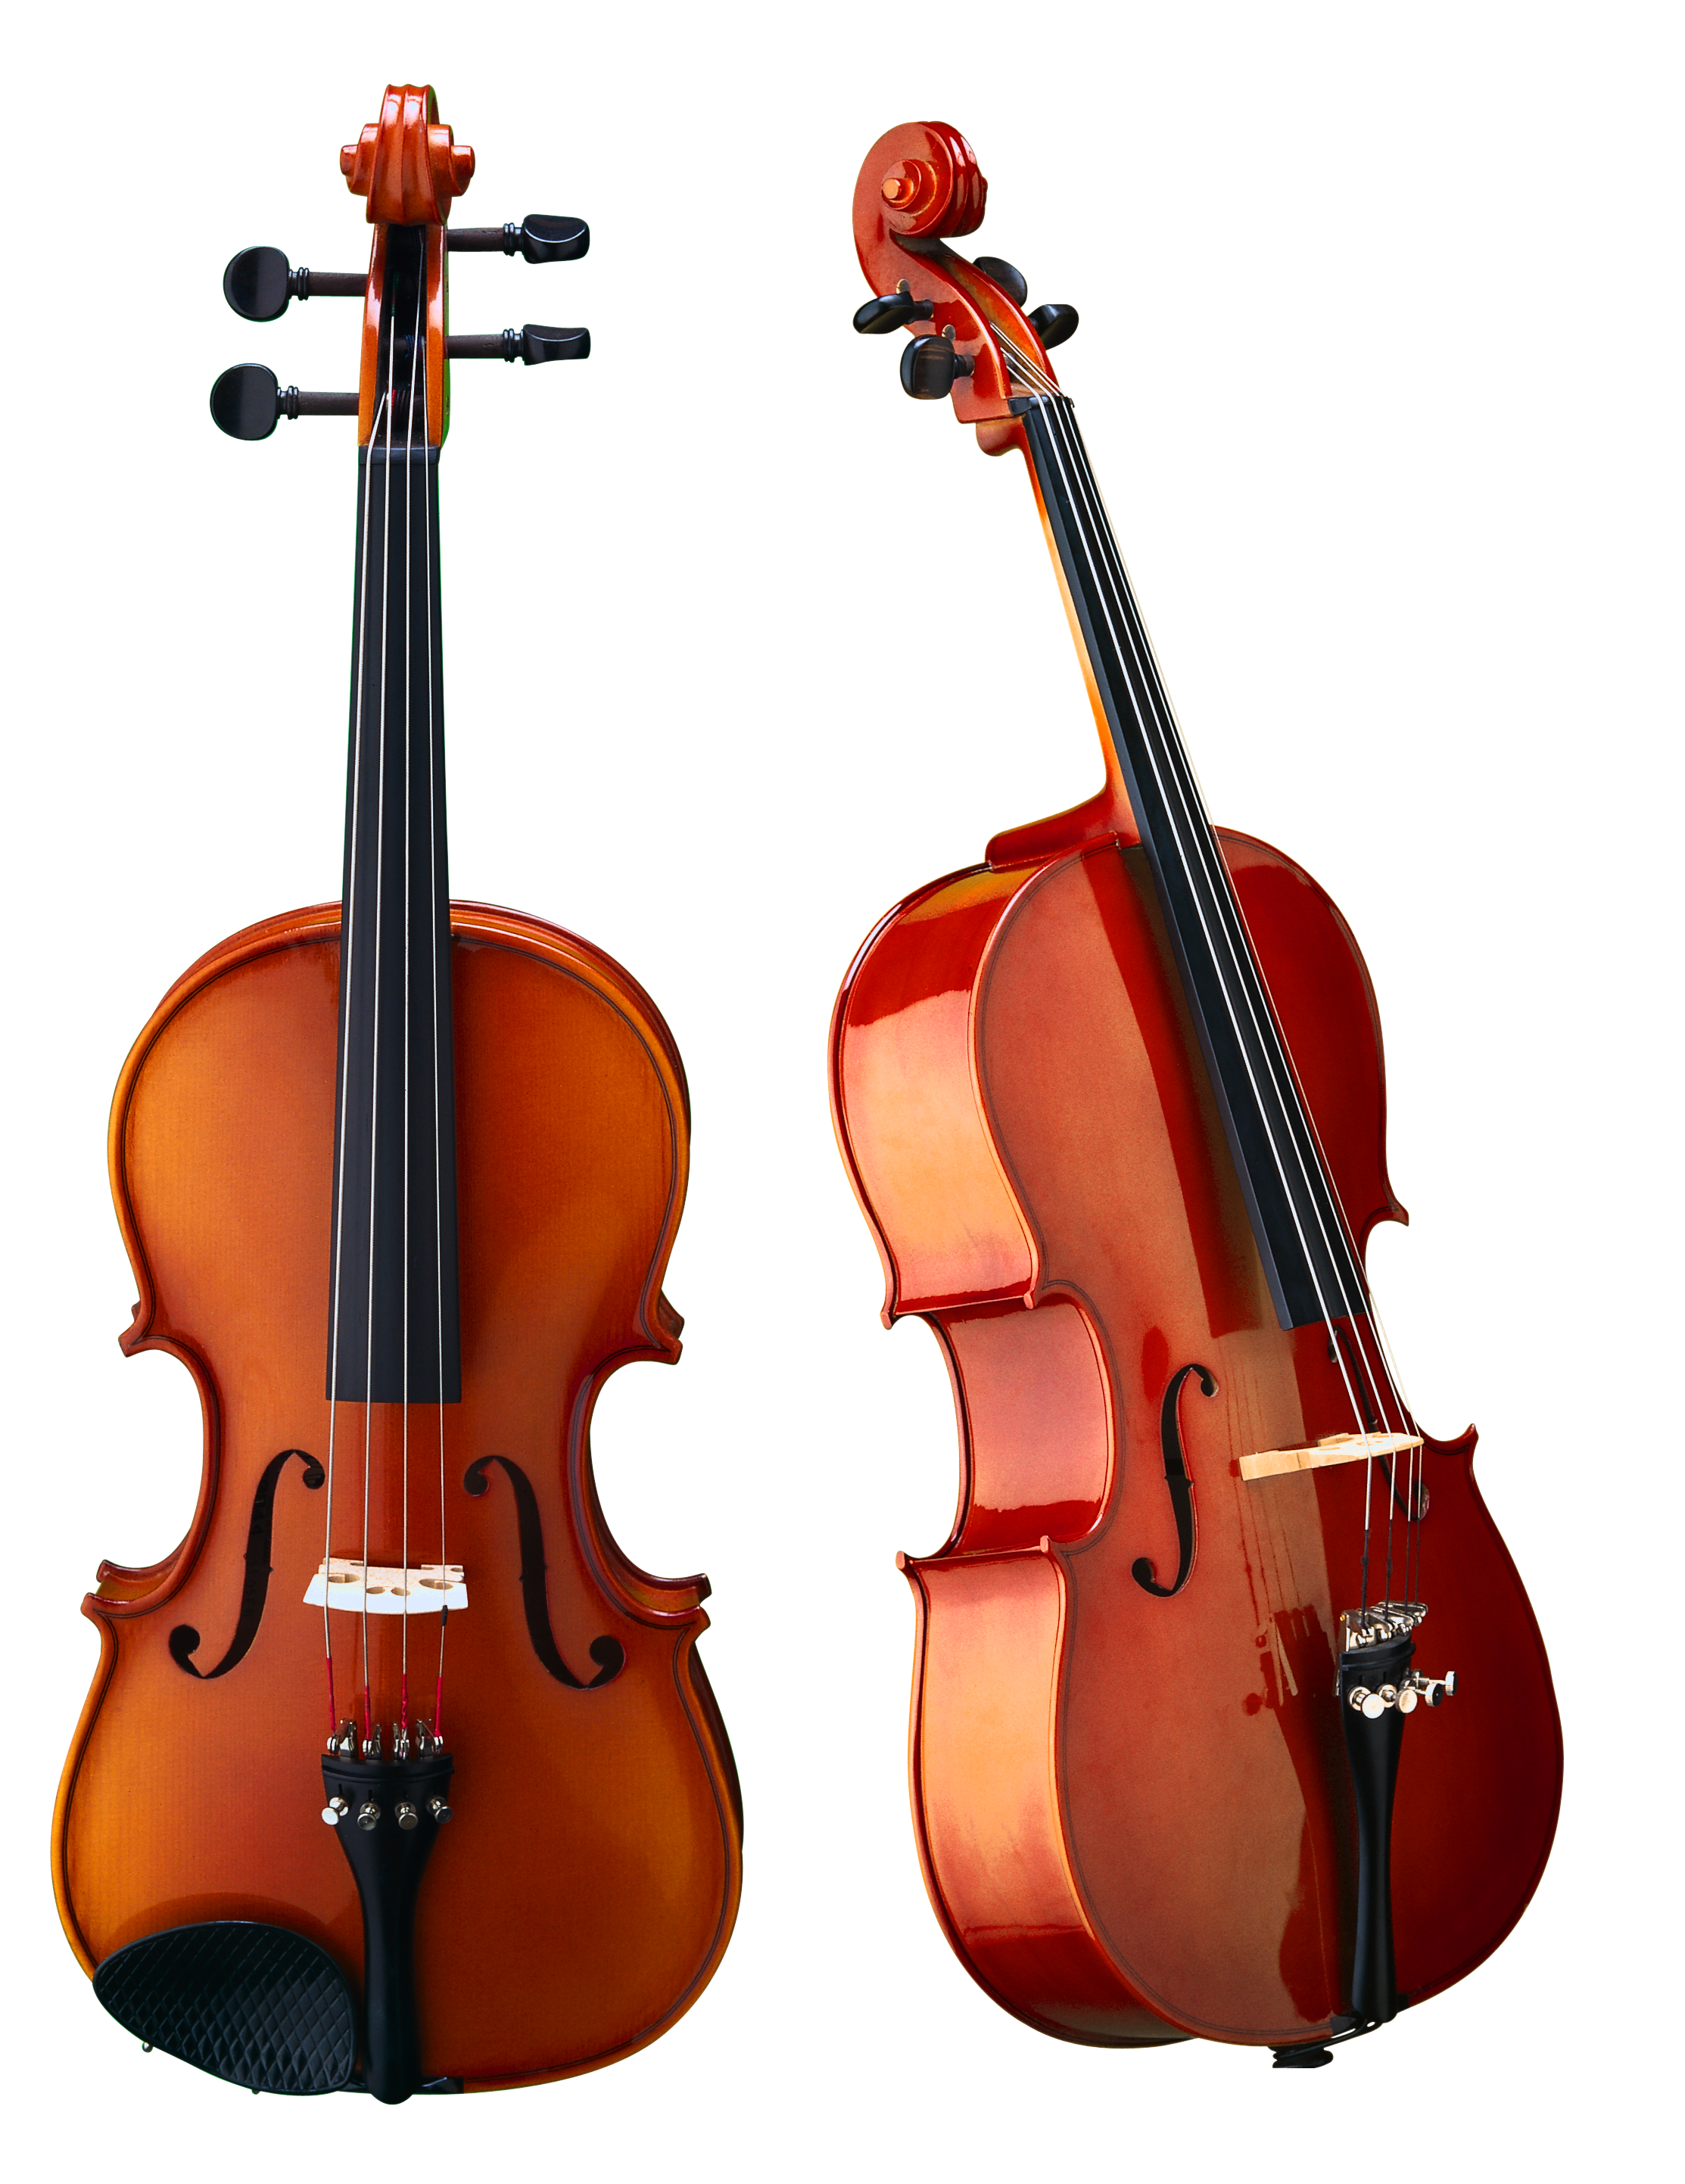 Instrument de musique violoncelle PNG Image gratuite